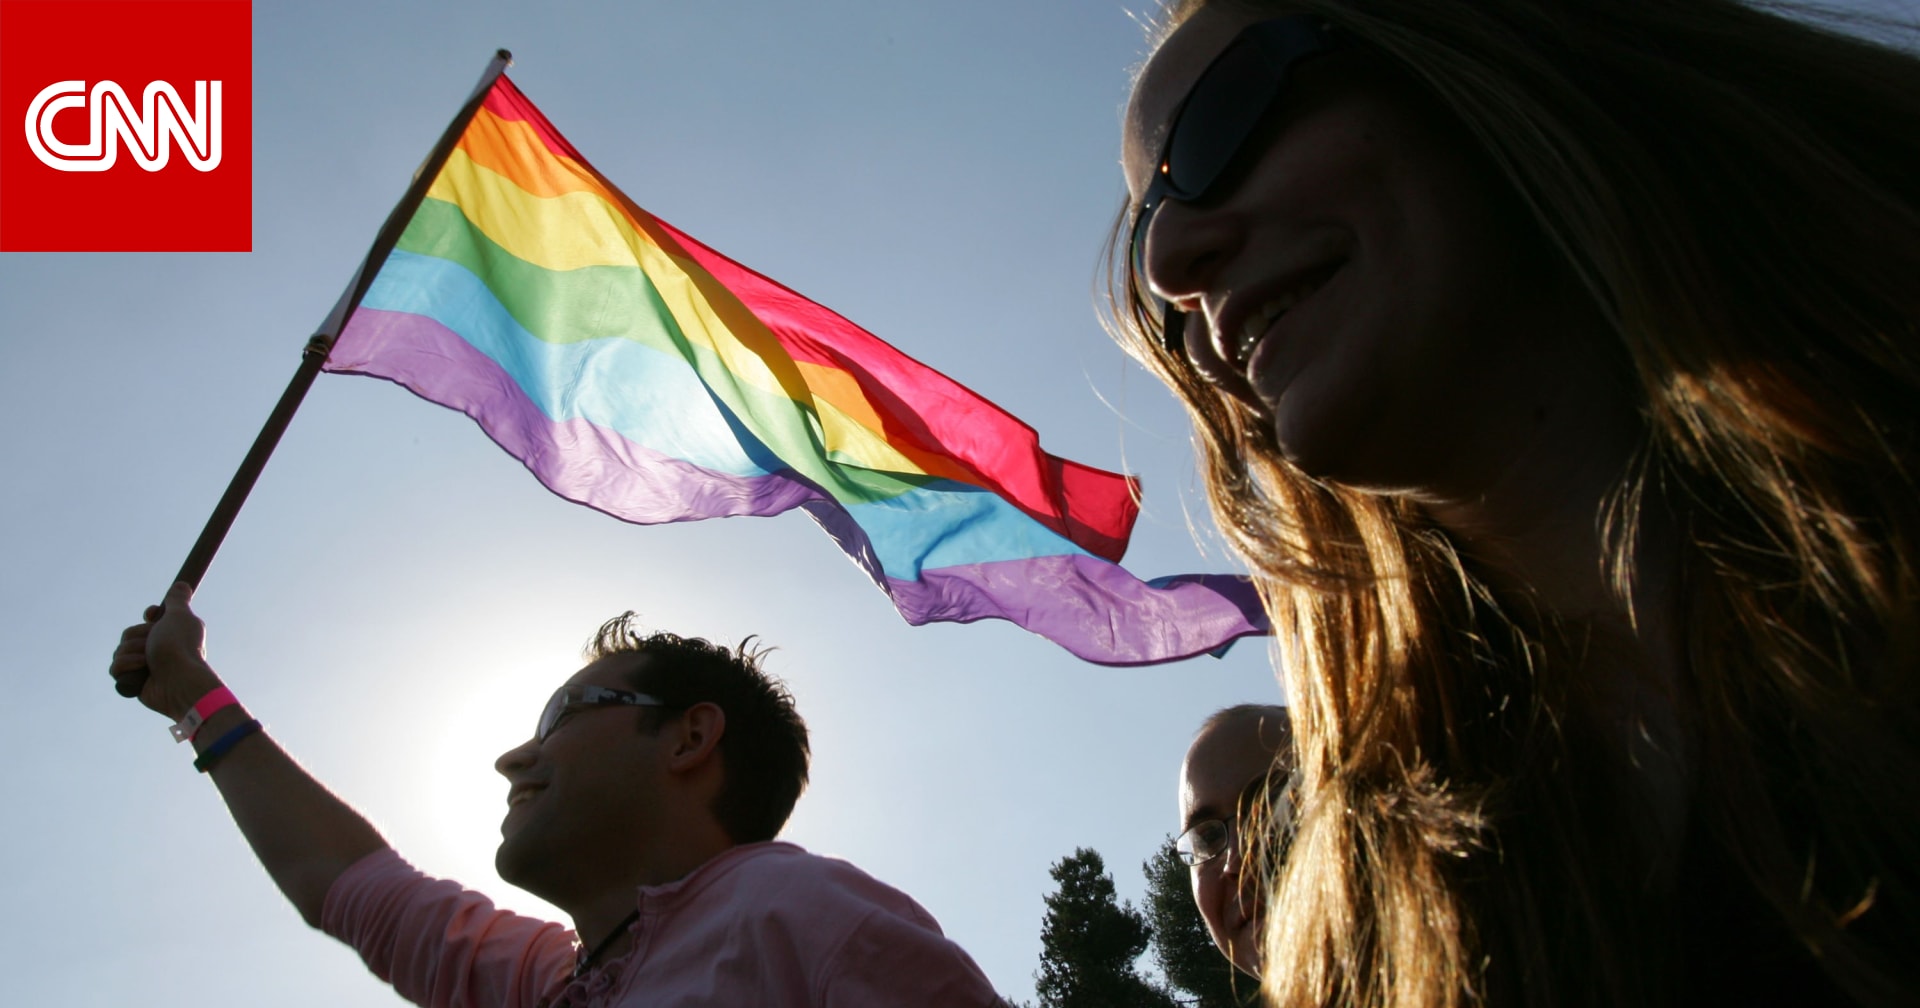 العفو الدولية تحث العراق على إلغاء قرار منع وسائل الإعلام من استخدام مصطلحي "المثلية الجنسية" و"الجندر"